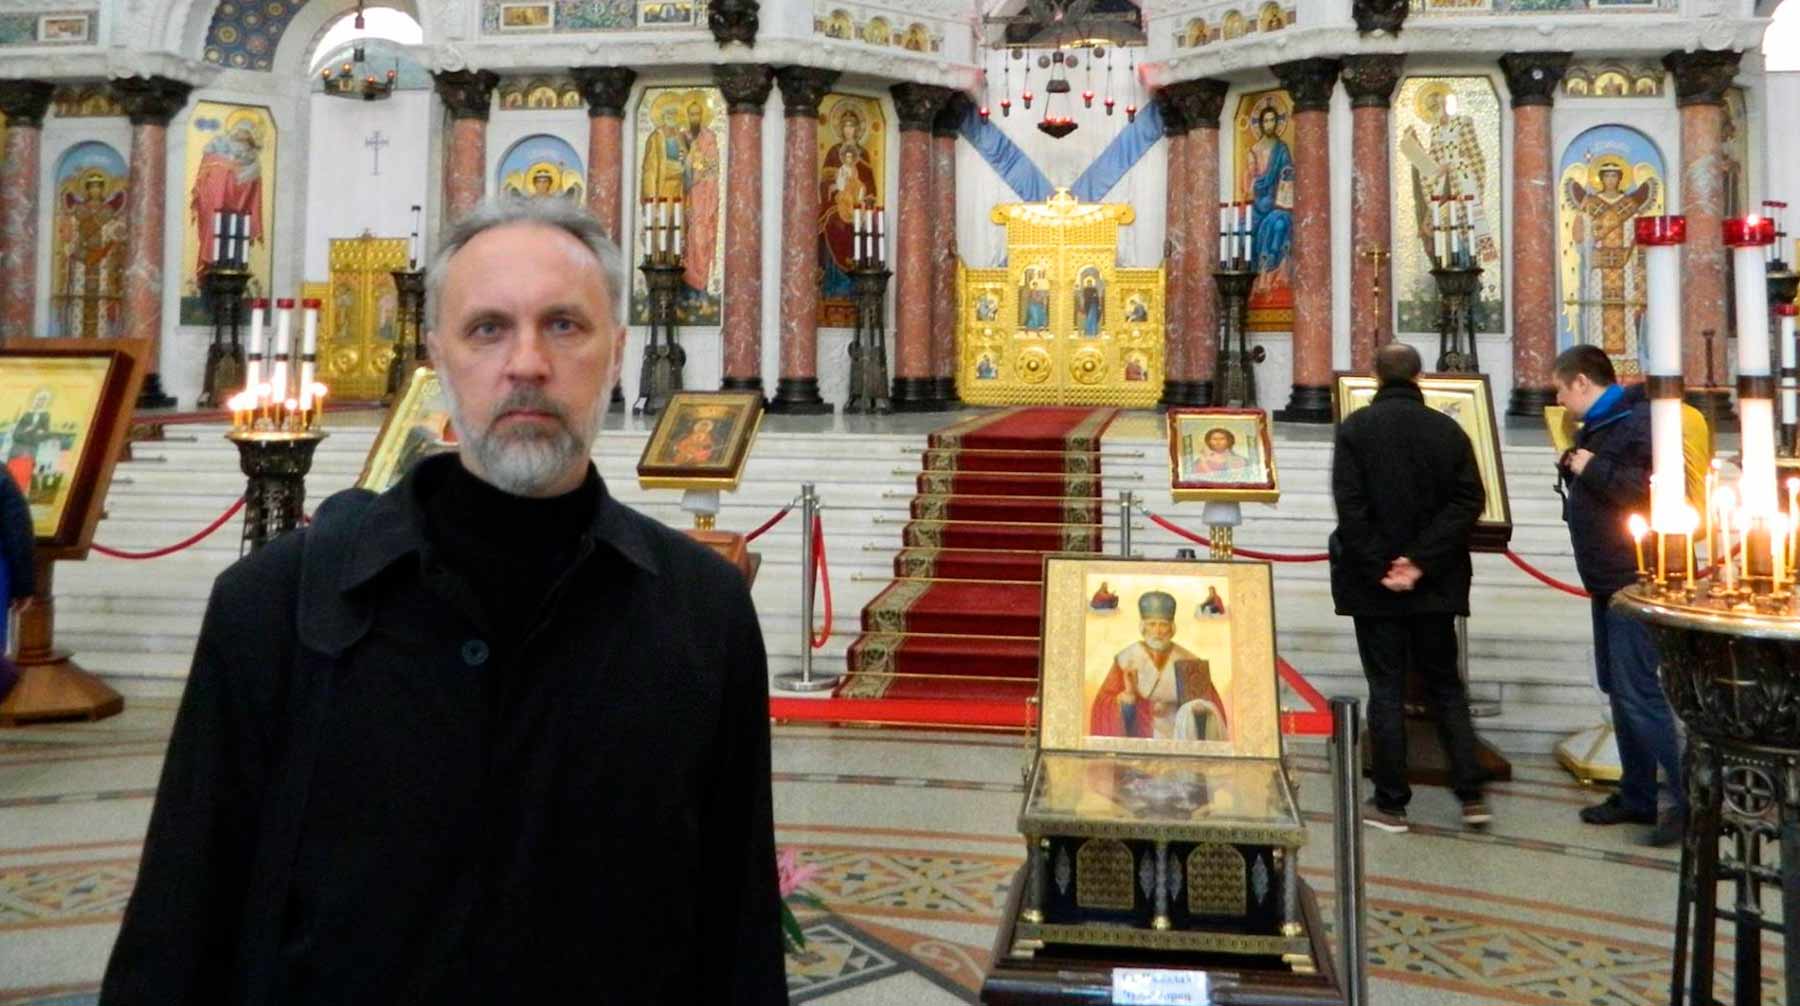 Иеромонах Иоанн подчеркнул, что он уважает подвиг советского народа, но церковный комплекс — это «языческое капище» Иеромонах Иоанн